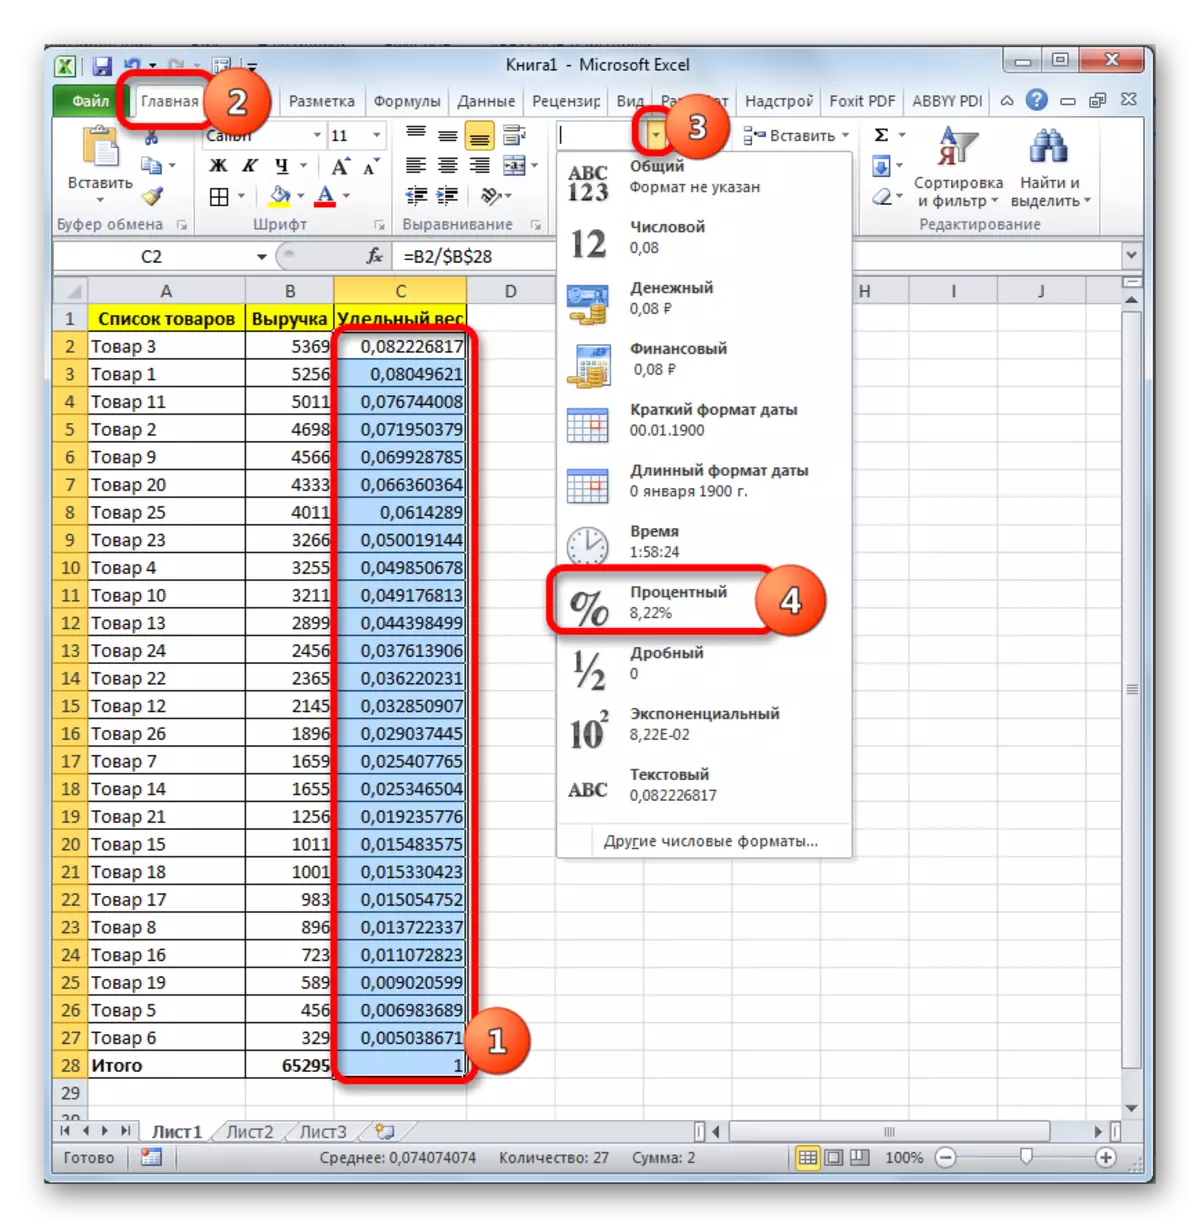 Menginstal format data yang jelas di Microsoft Excel